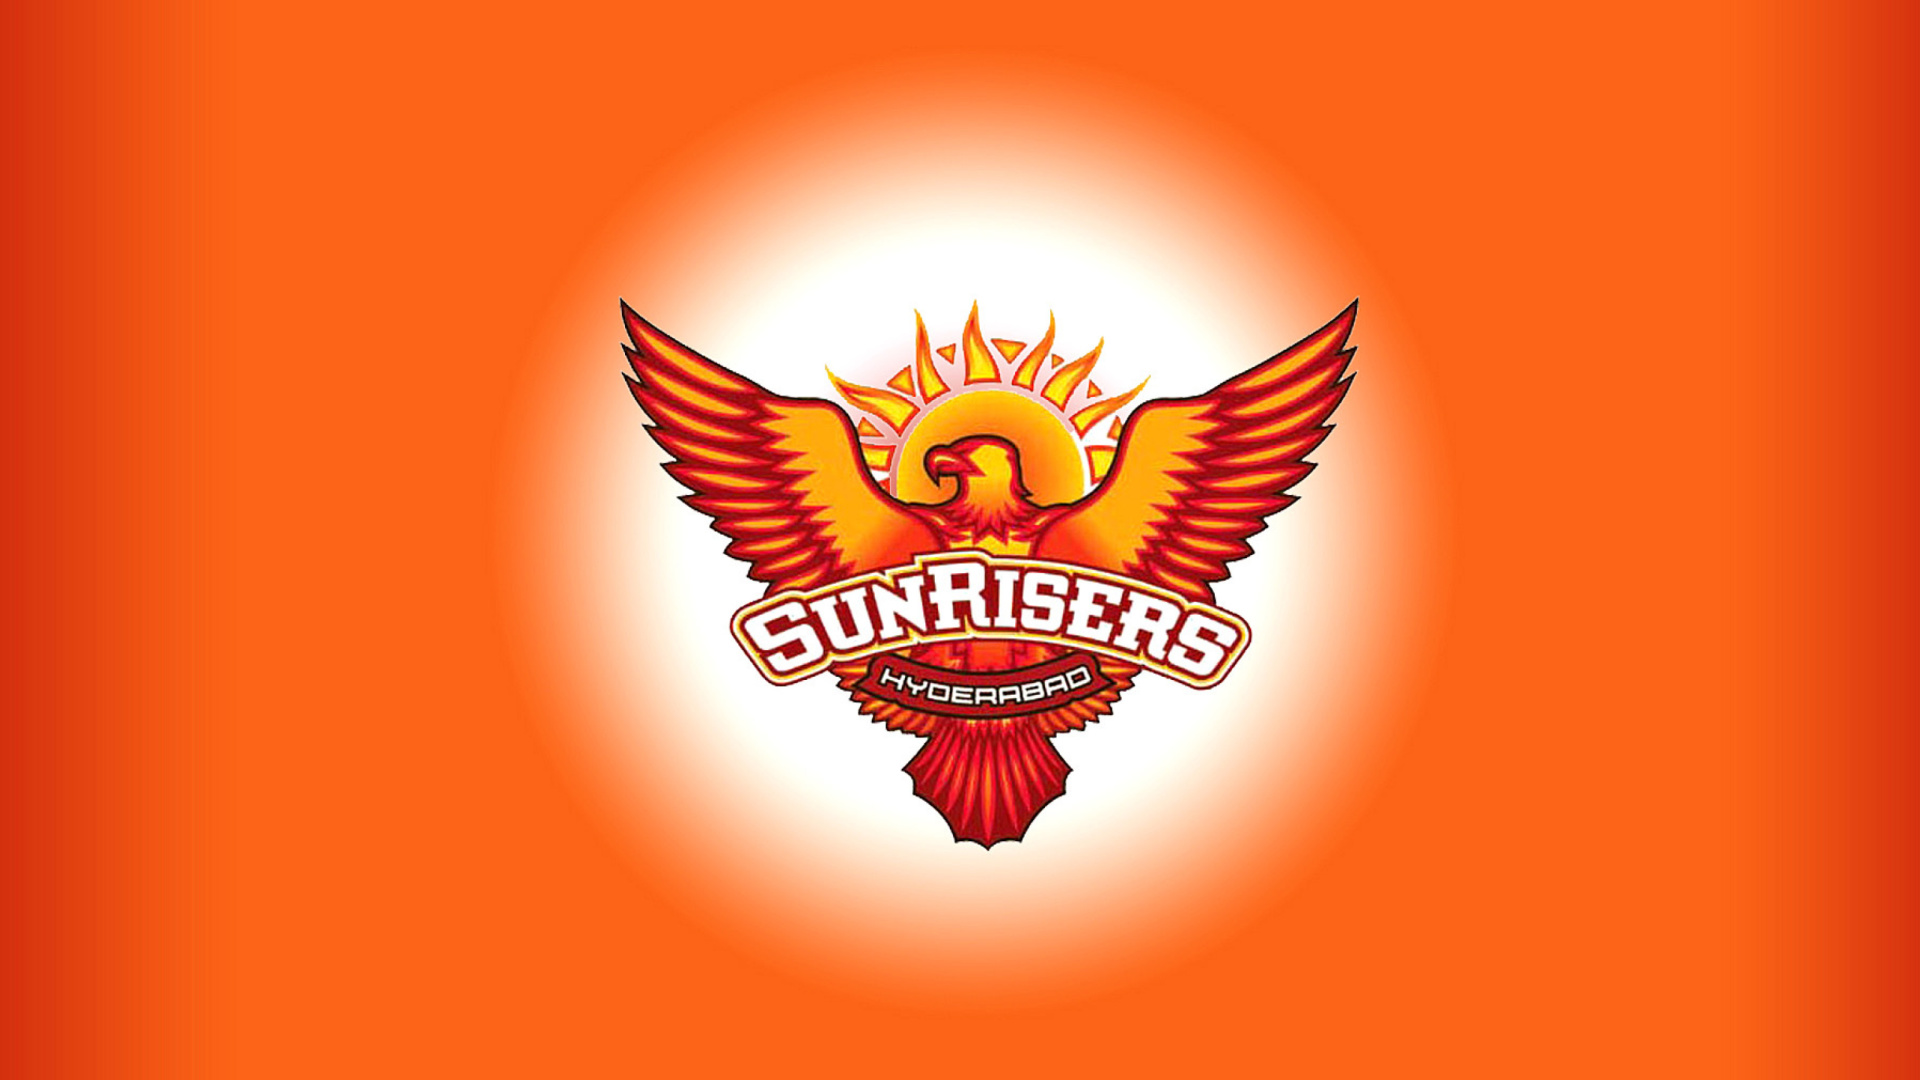 Обои Sunrisers Hyderabad IPL 1920x1080